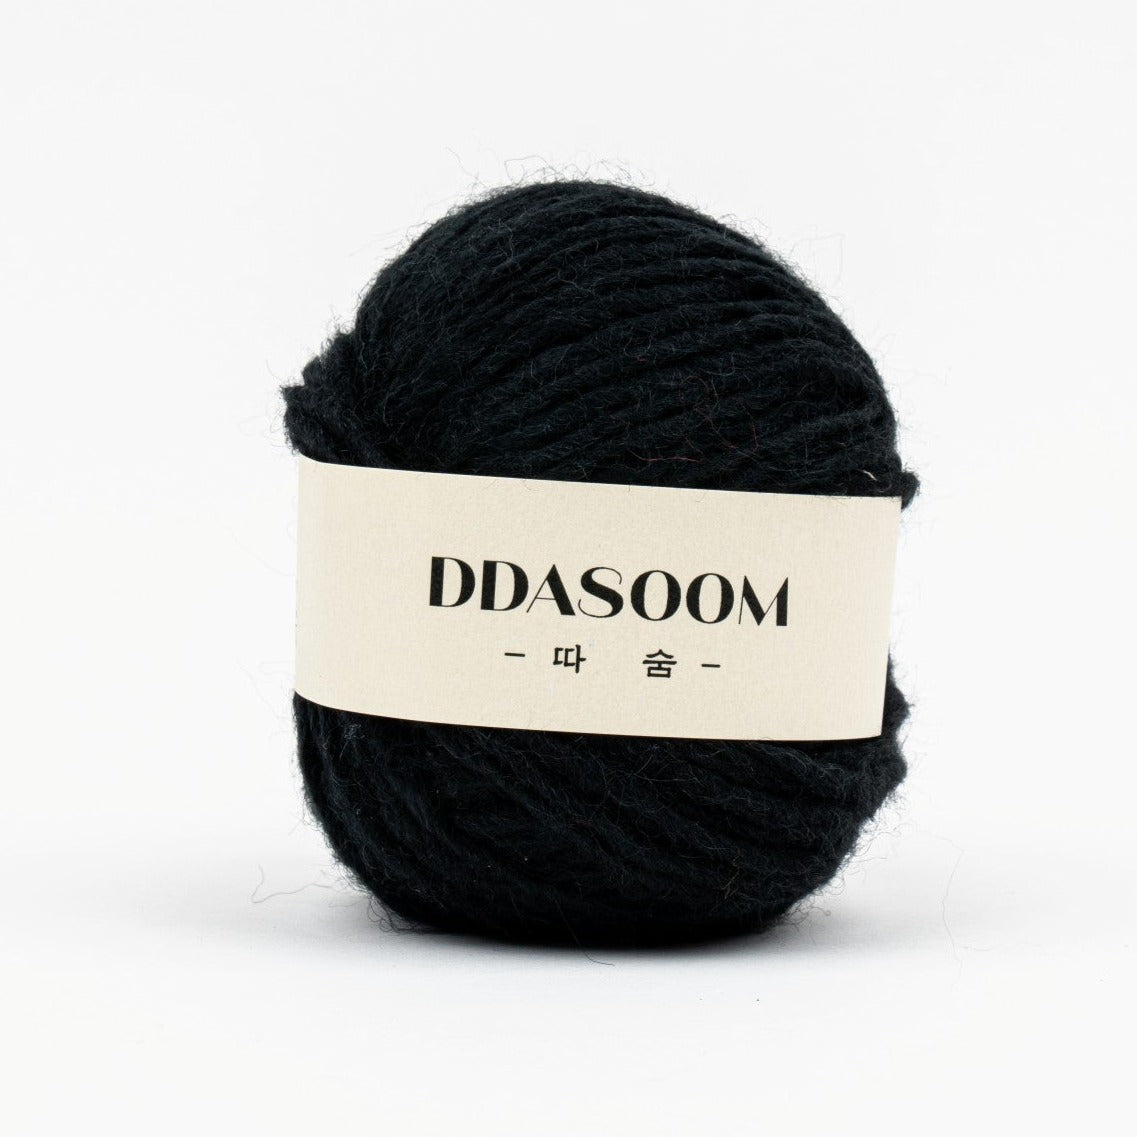 Ddasoom, Wool Acrylic Yarn, Light and Fluffy, 11 Pretty Colors